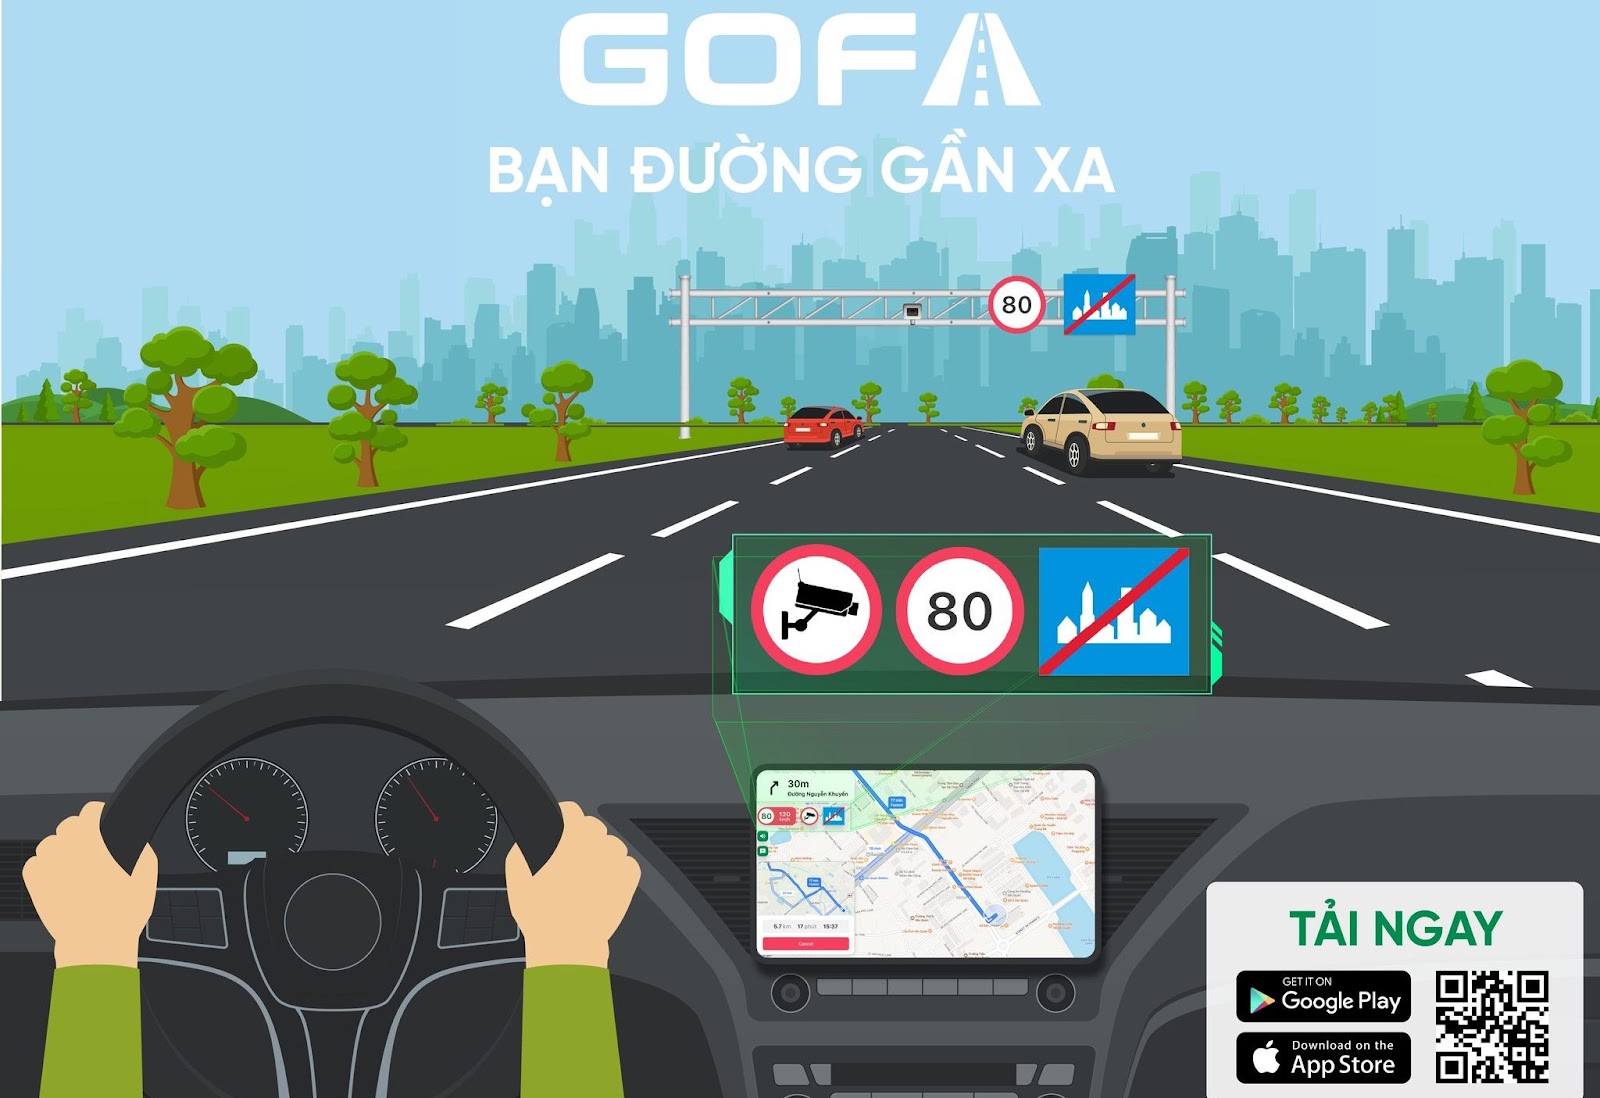 Đặc điểm nổi bật của app GOFA